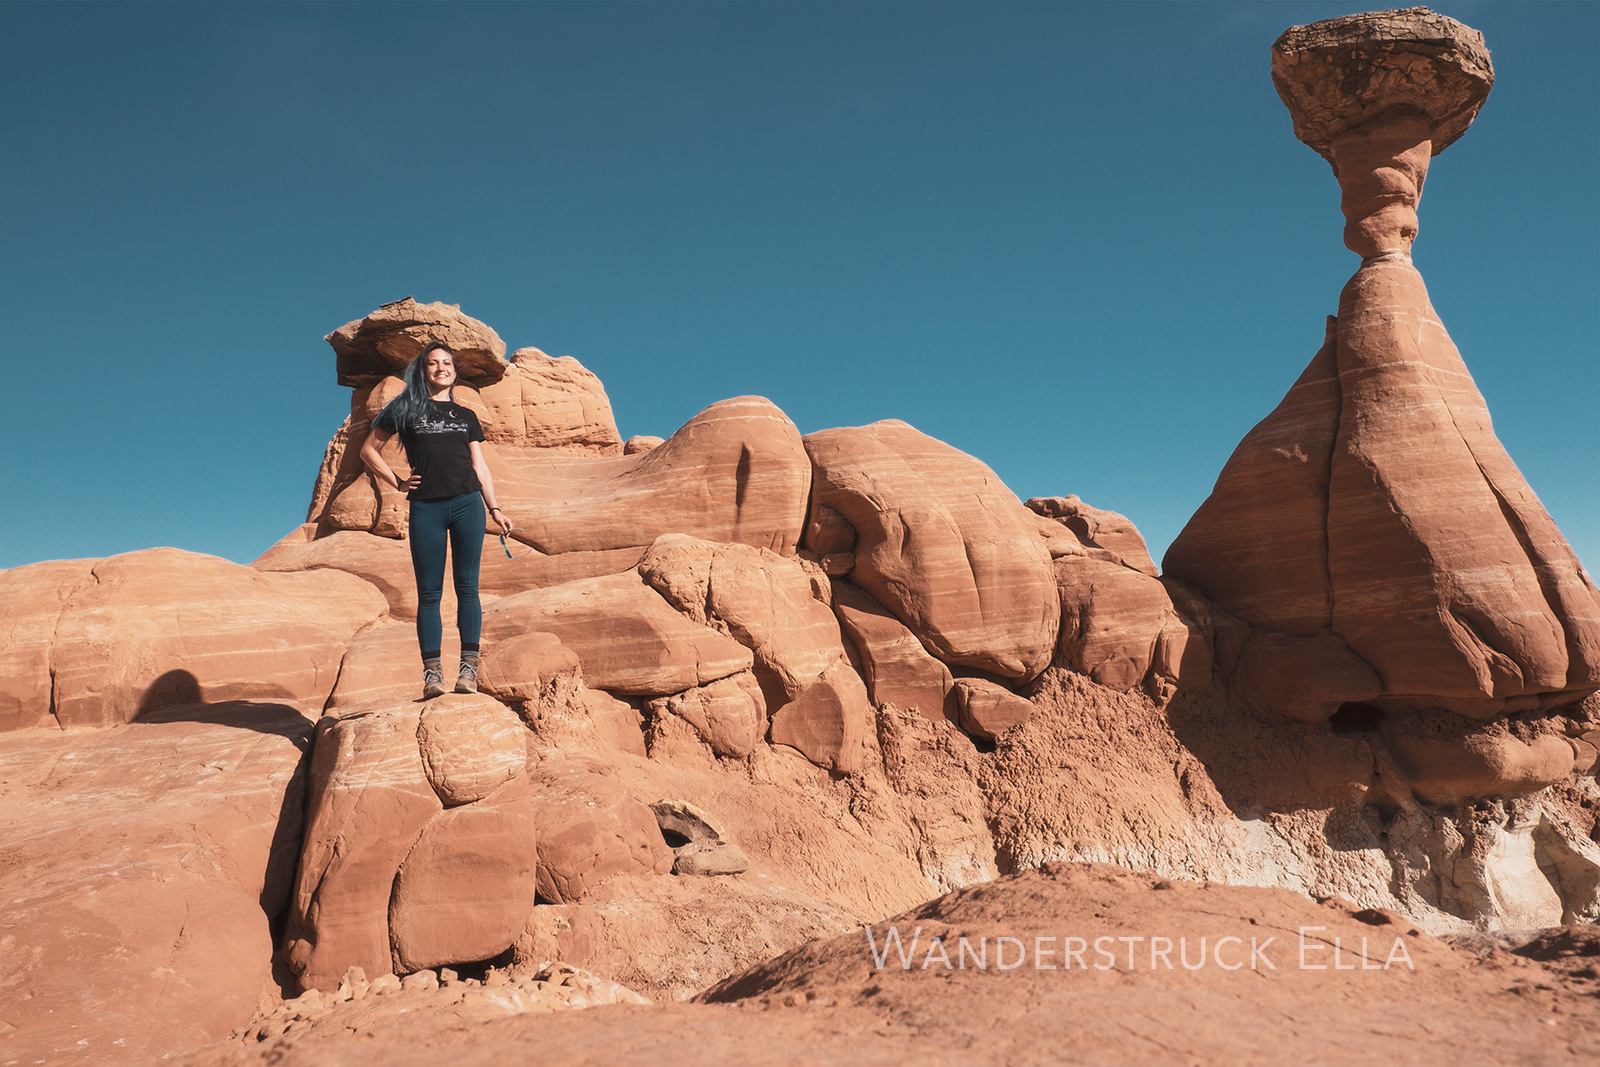 traveling photographer and writer Wanderstruck Ella happily hiking hoodoos in Utah